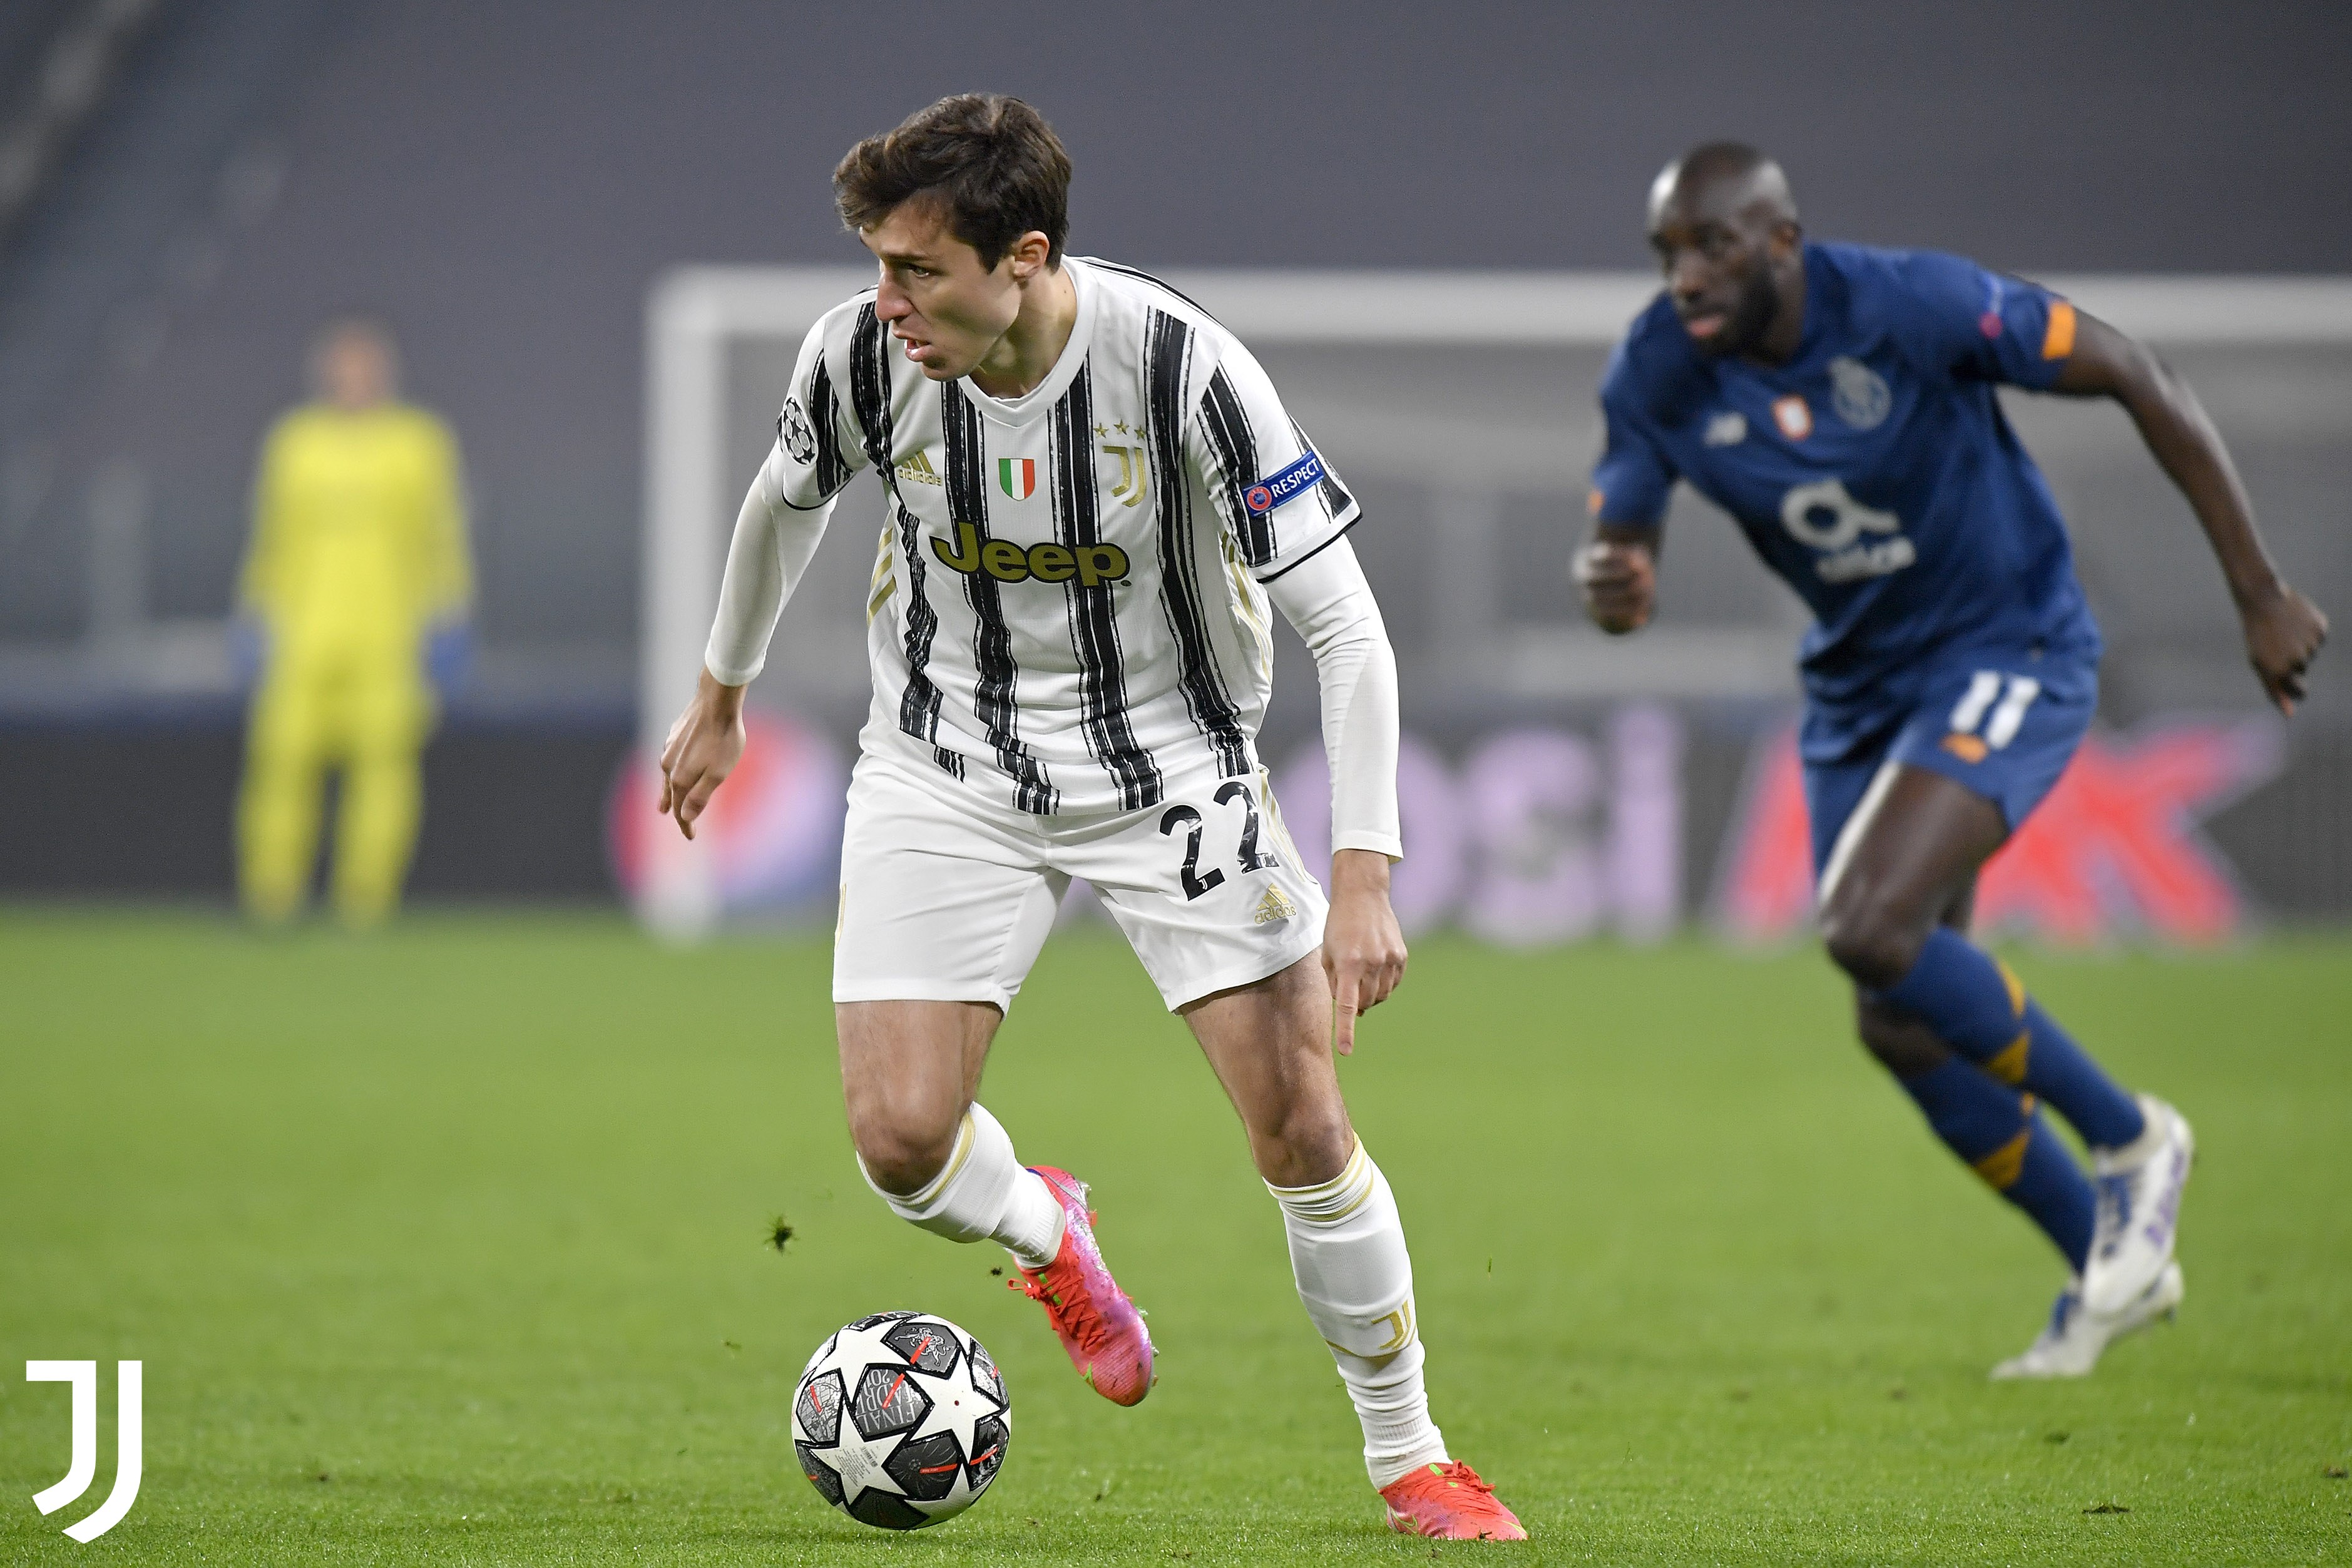 VIDEO: Resumen del partido de la Juventus hoy vs Porto, Champions League